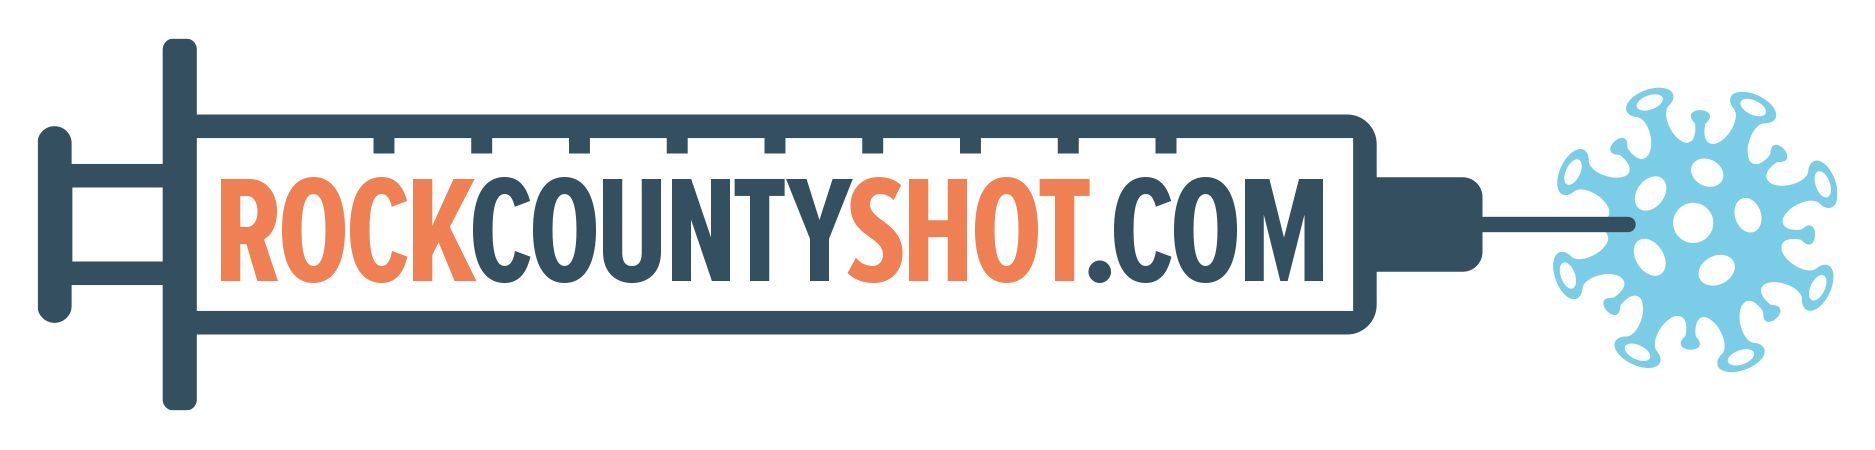 Rock County Shot.com logo